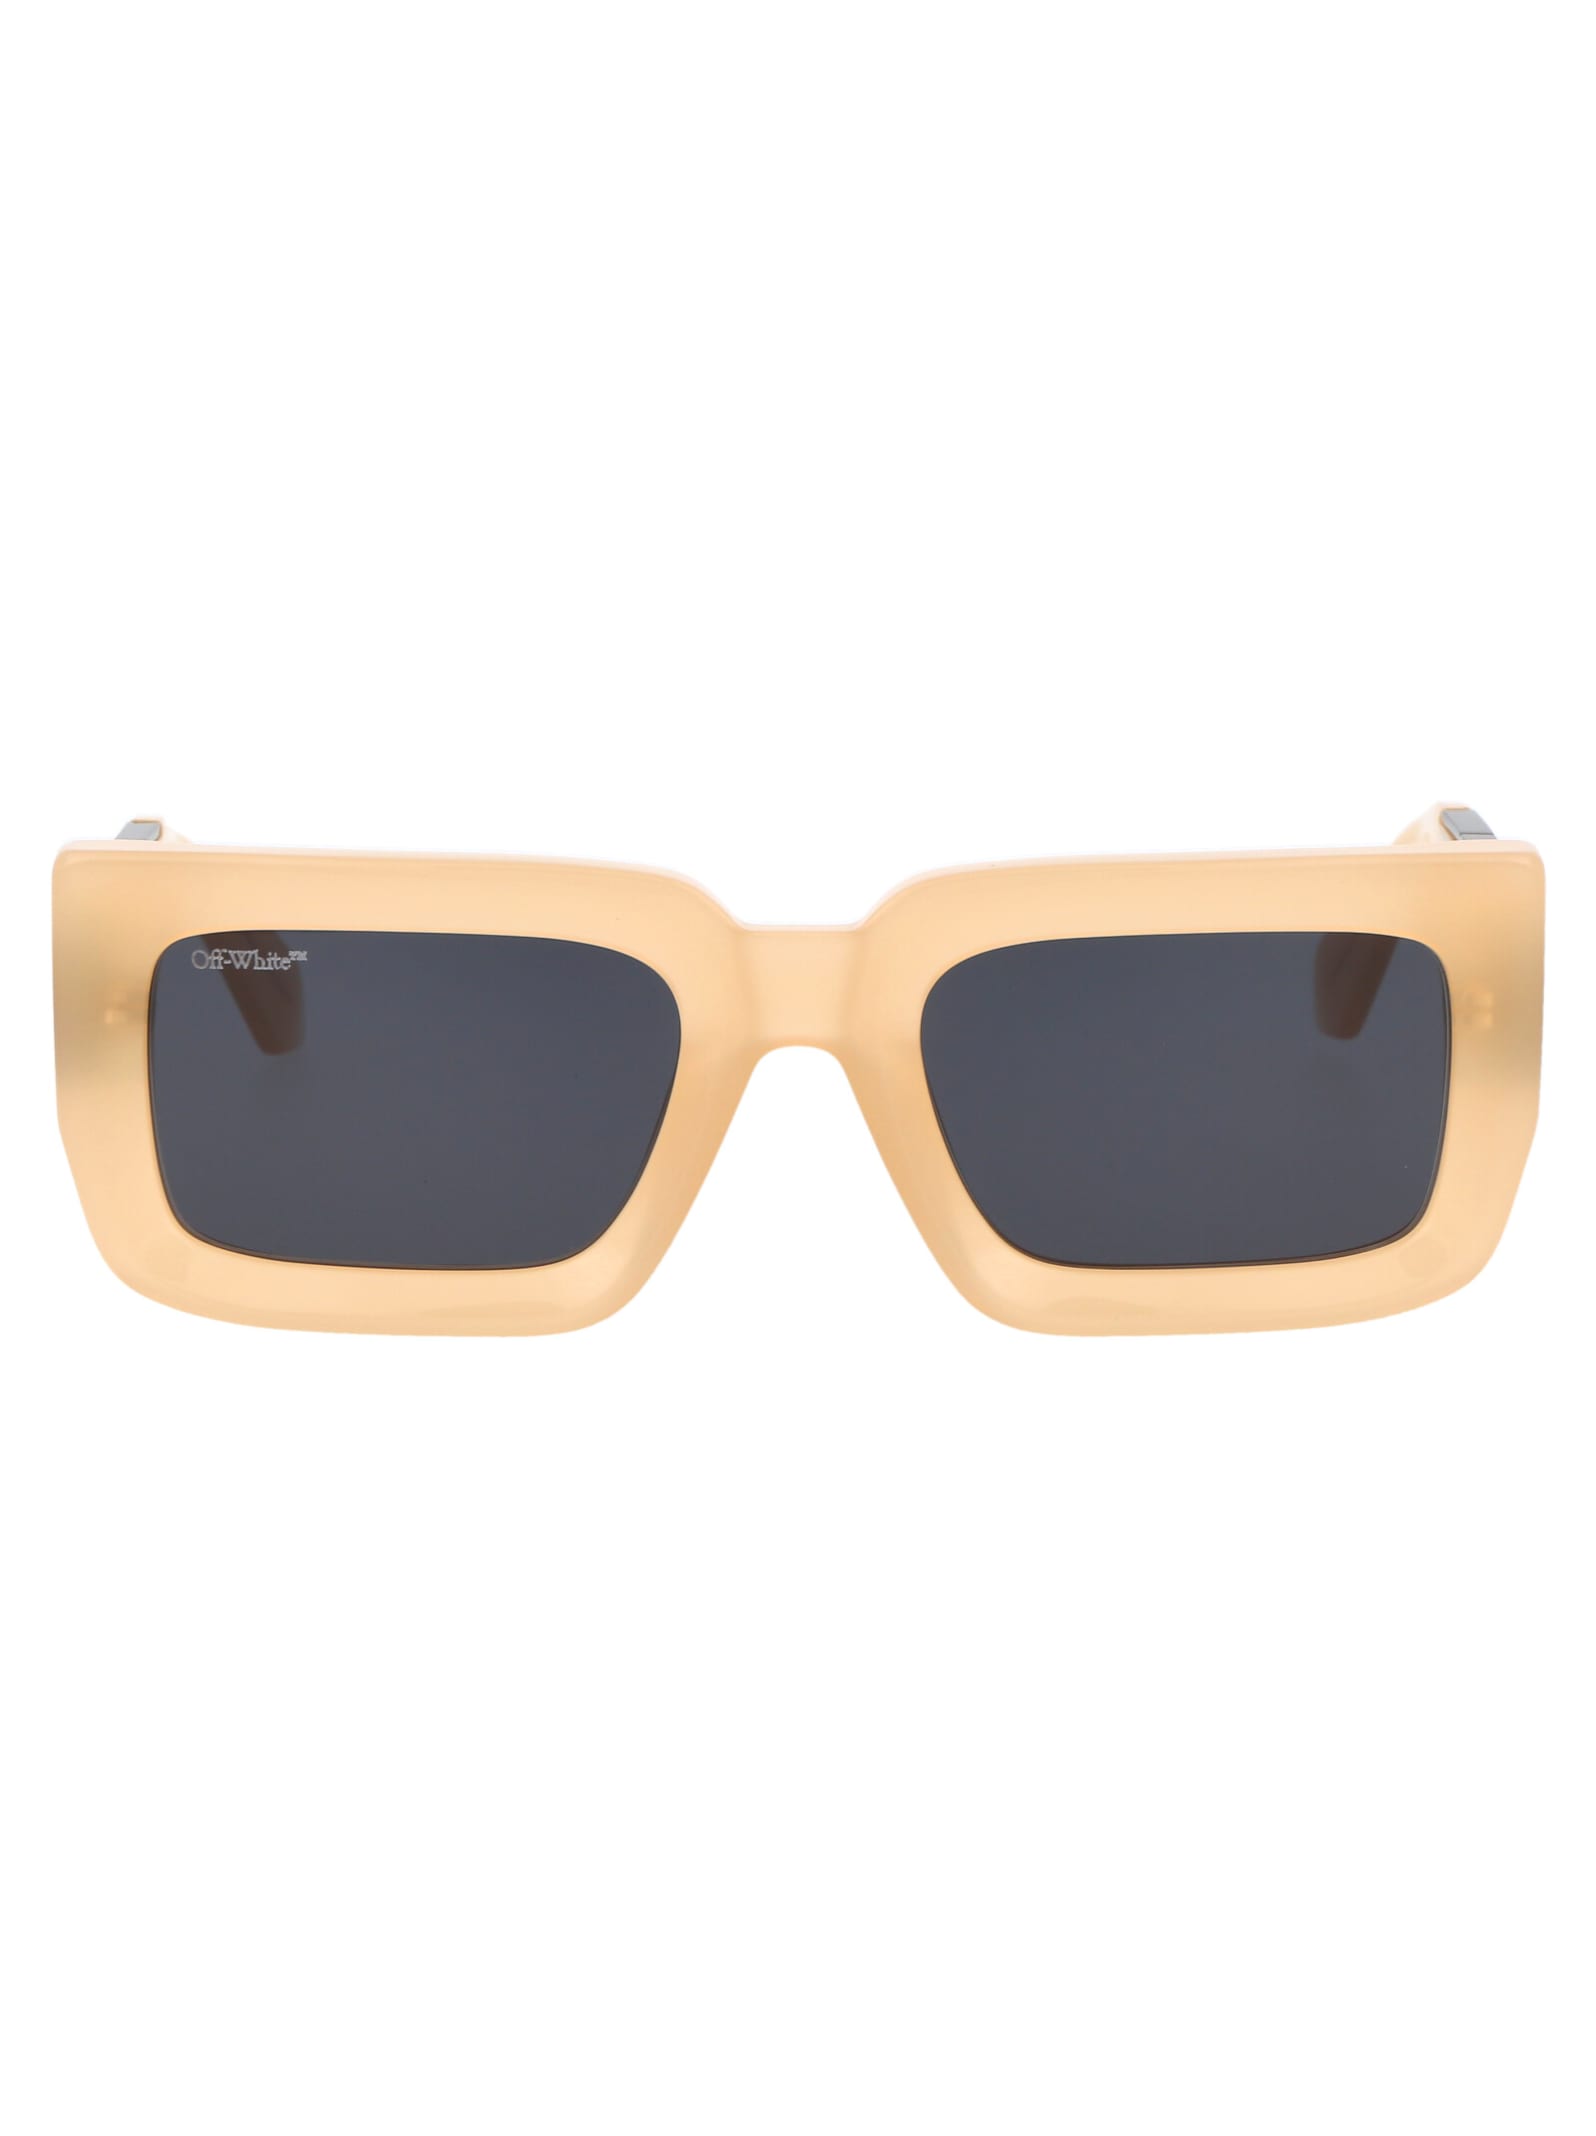 Off-white Boston Sunglasses In 1707 Sand